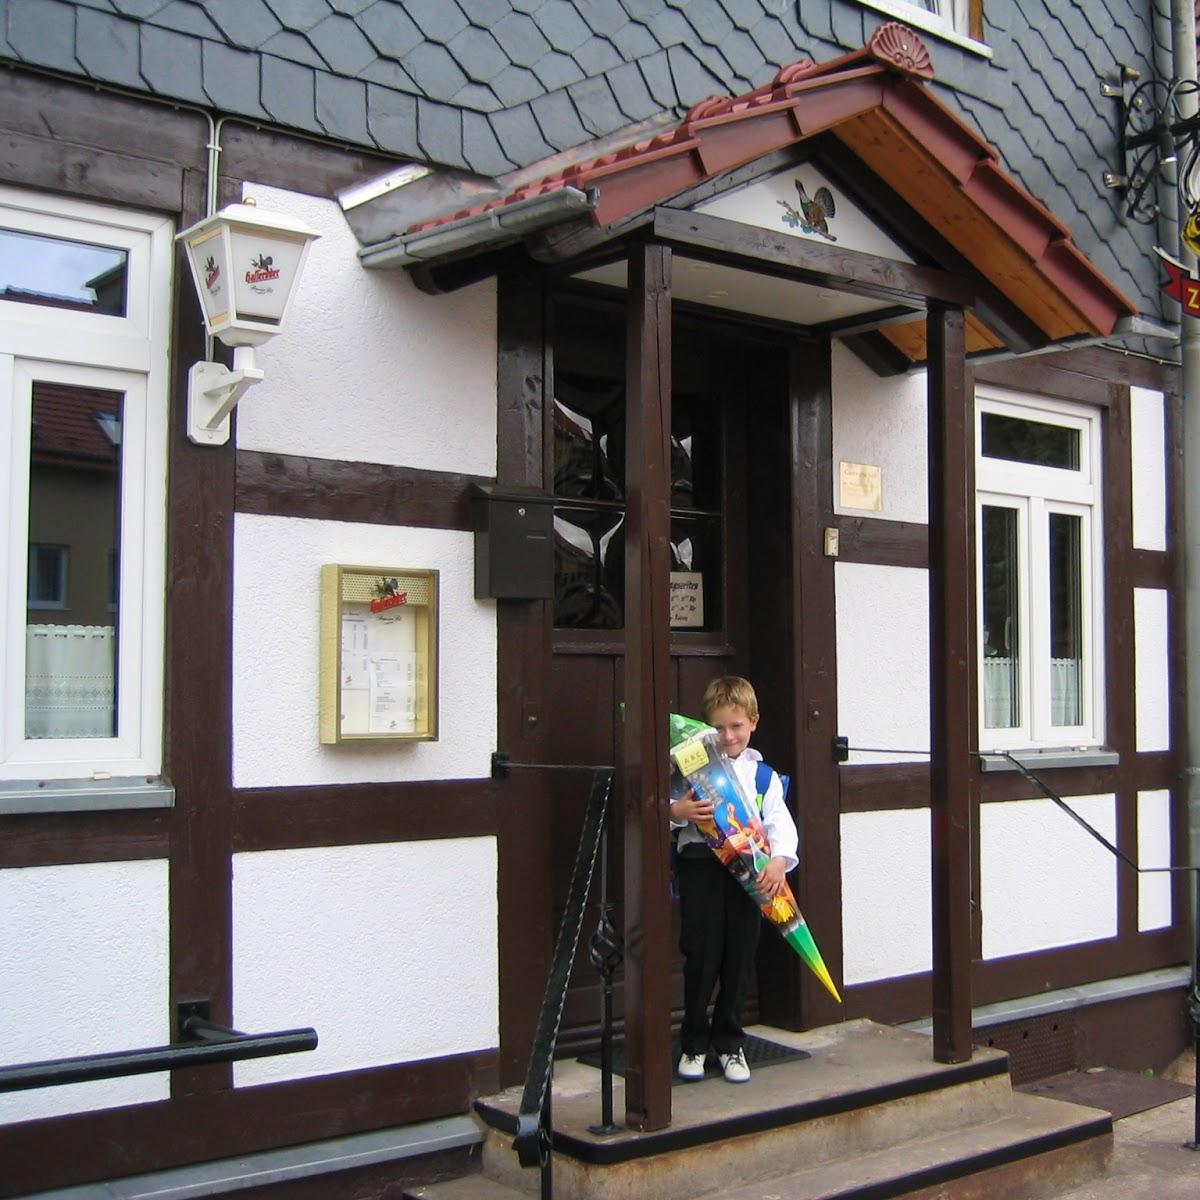 Restaurant "Gastwirtschaft Zur Kurve" in Harztor